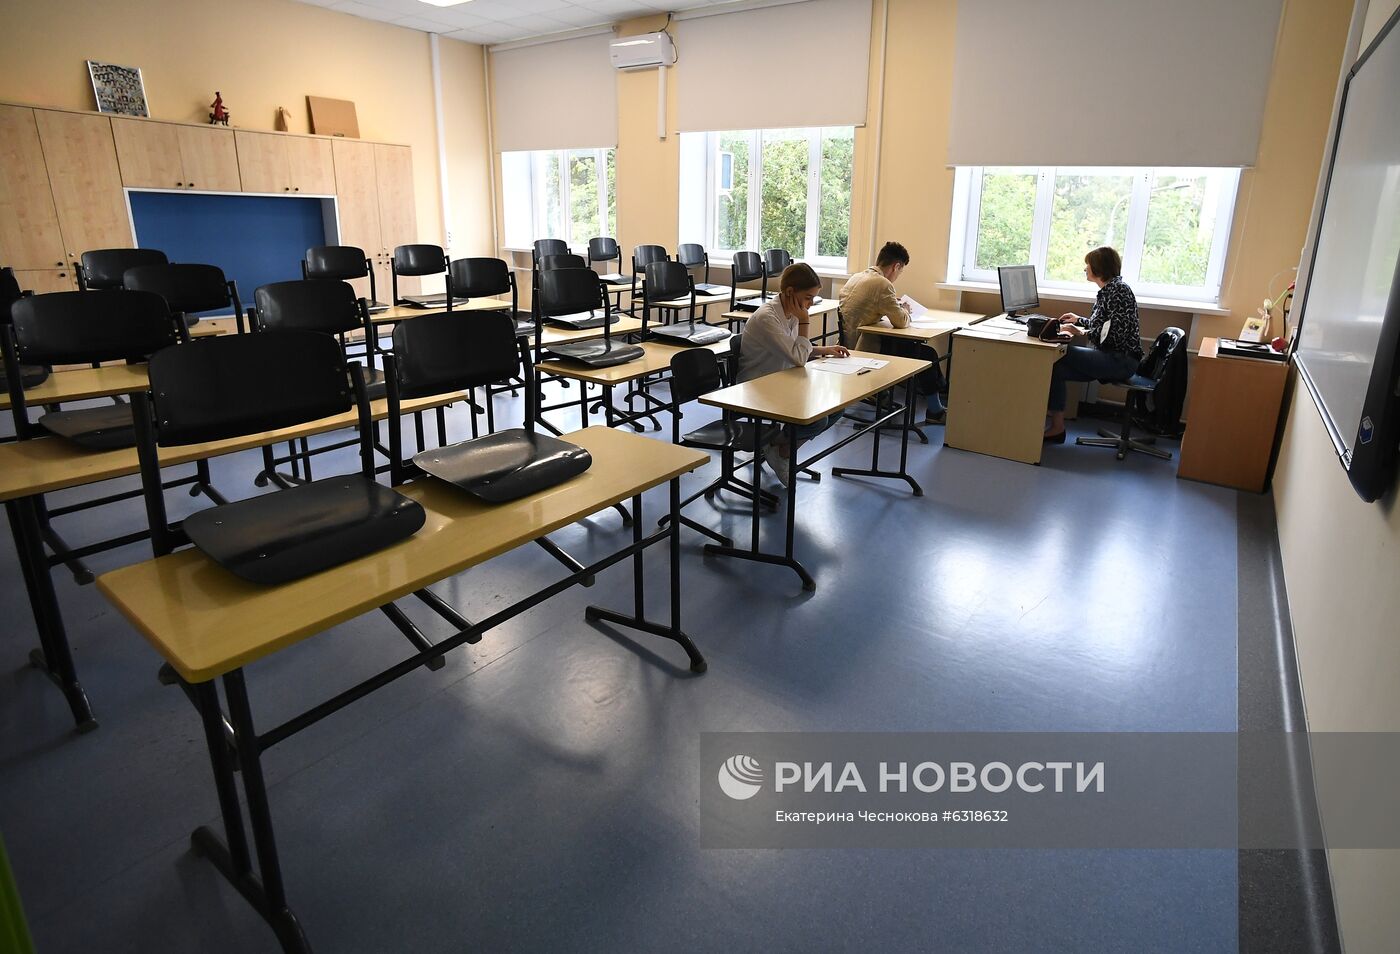 Подготовка к новому учебному году в московской школе "Класс-центр"